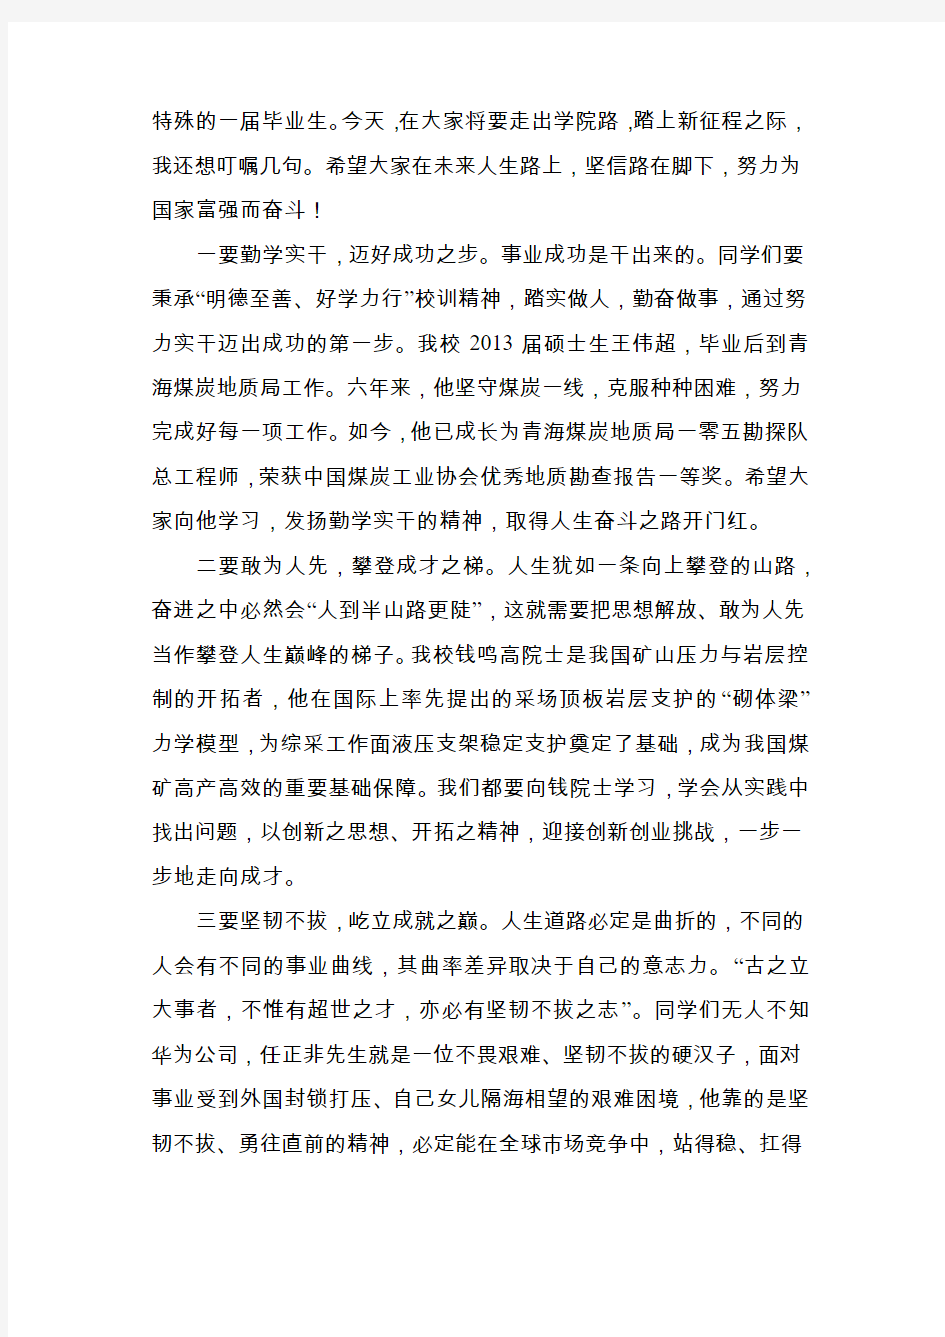 【毕业致辞】中国矿业大学(北京)校长在2019年毕业典礼上的讲话